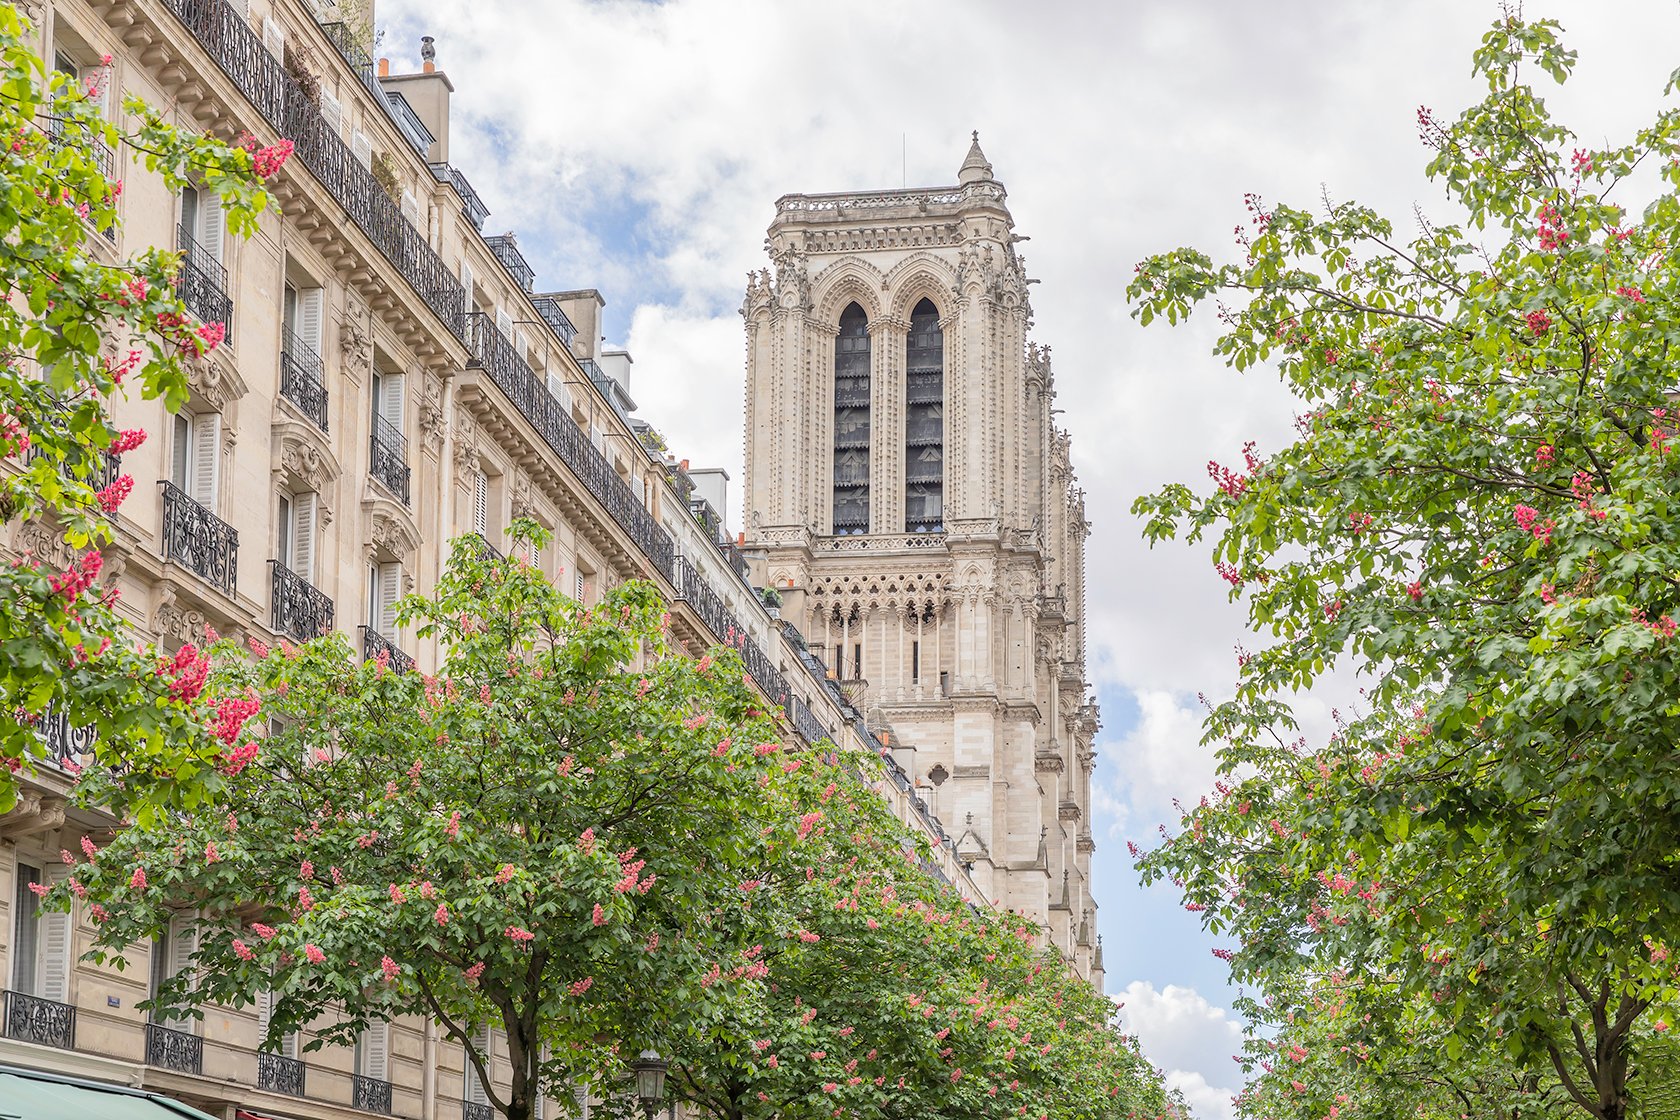 Location de vacances Notre Dame Paris